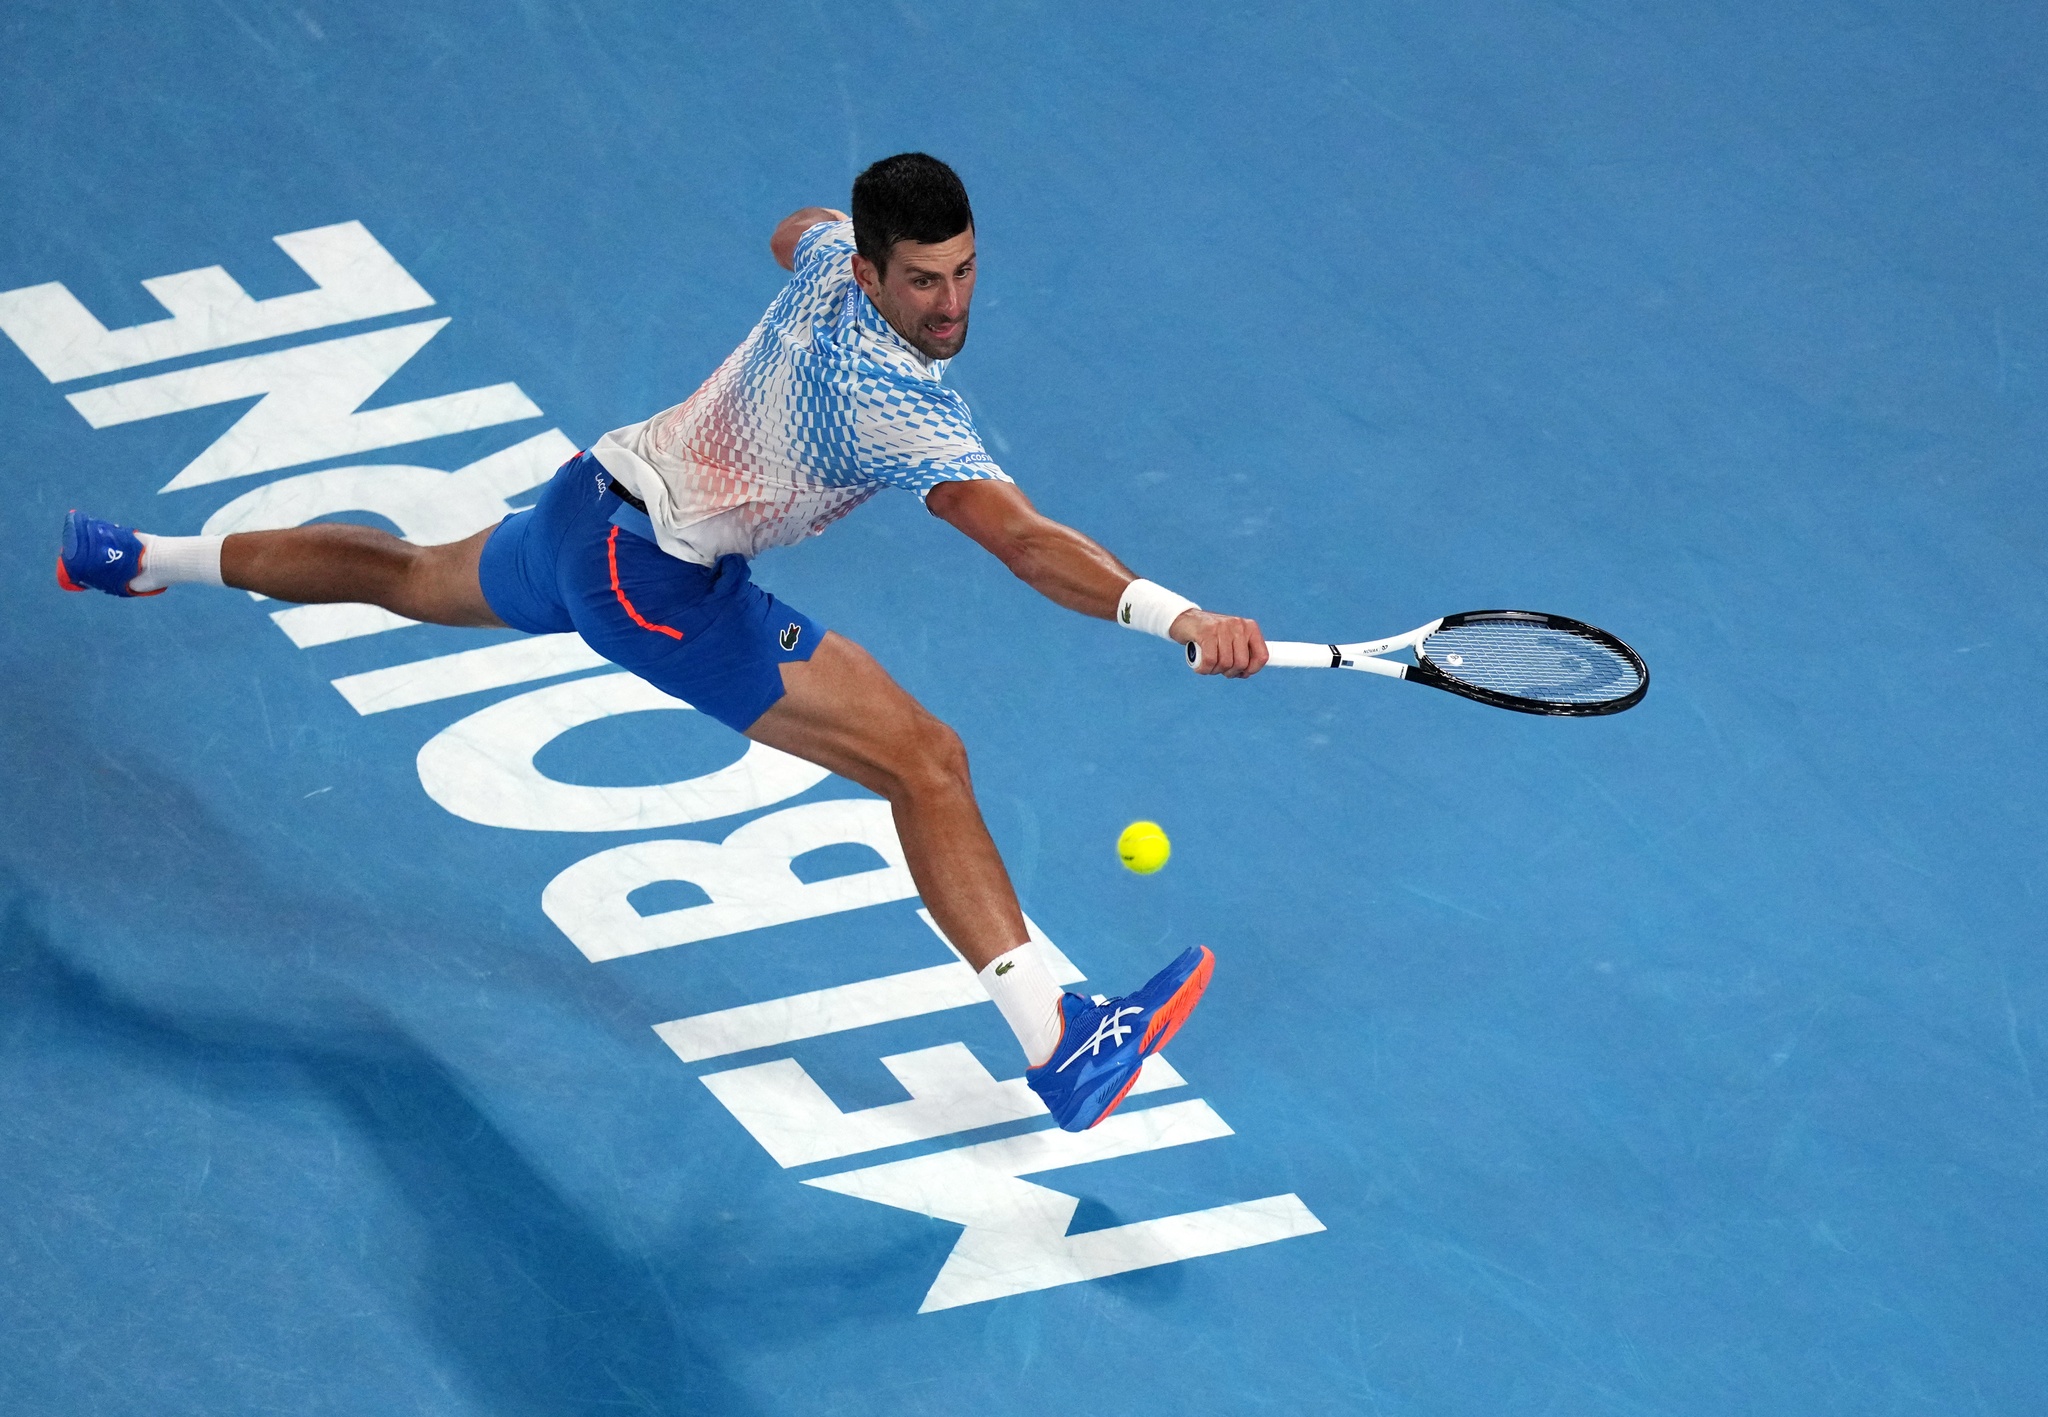 Vô địch giải Úc mở rộng, Djokovic cân bằng kỷ lục của làng quần vợt thế giới - ảnh 2